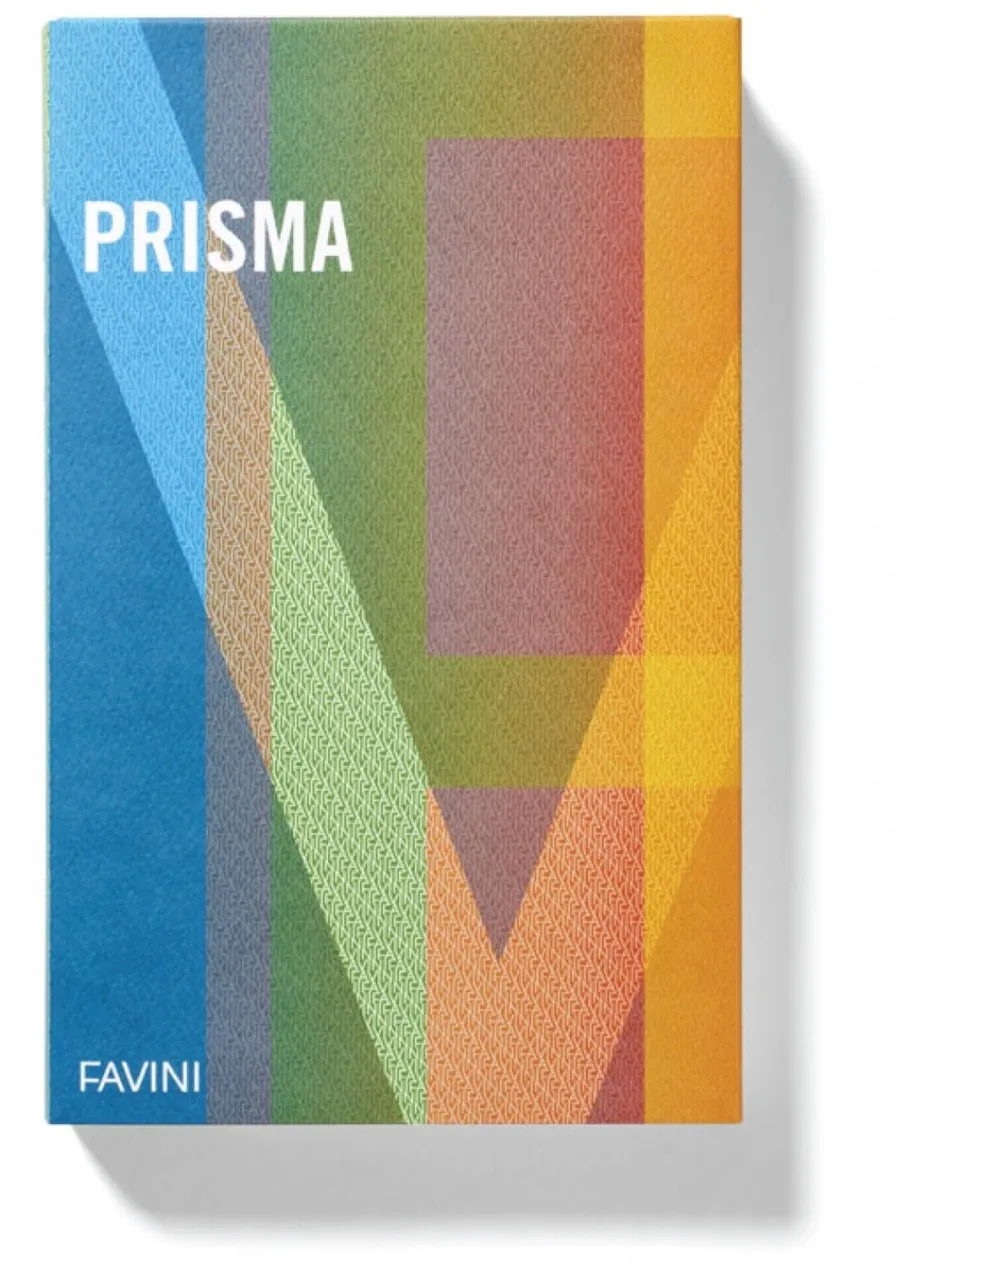 Favini Prismacolor 220 cartone 10 fogli 220 g/m²